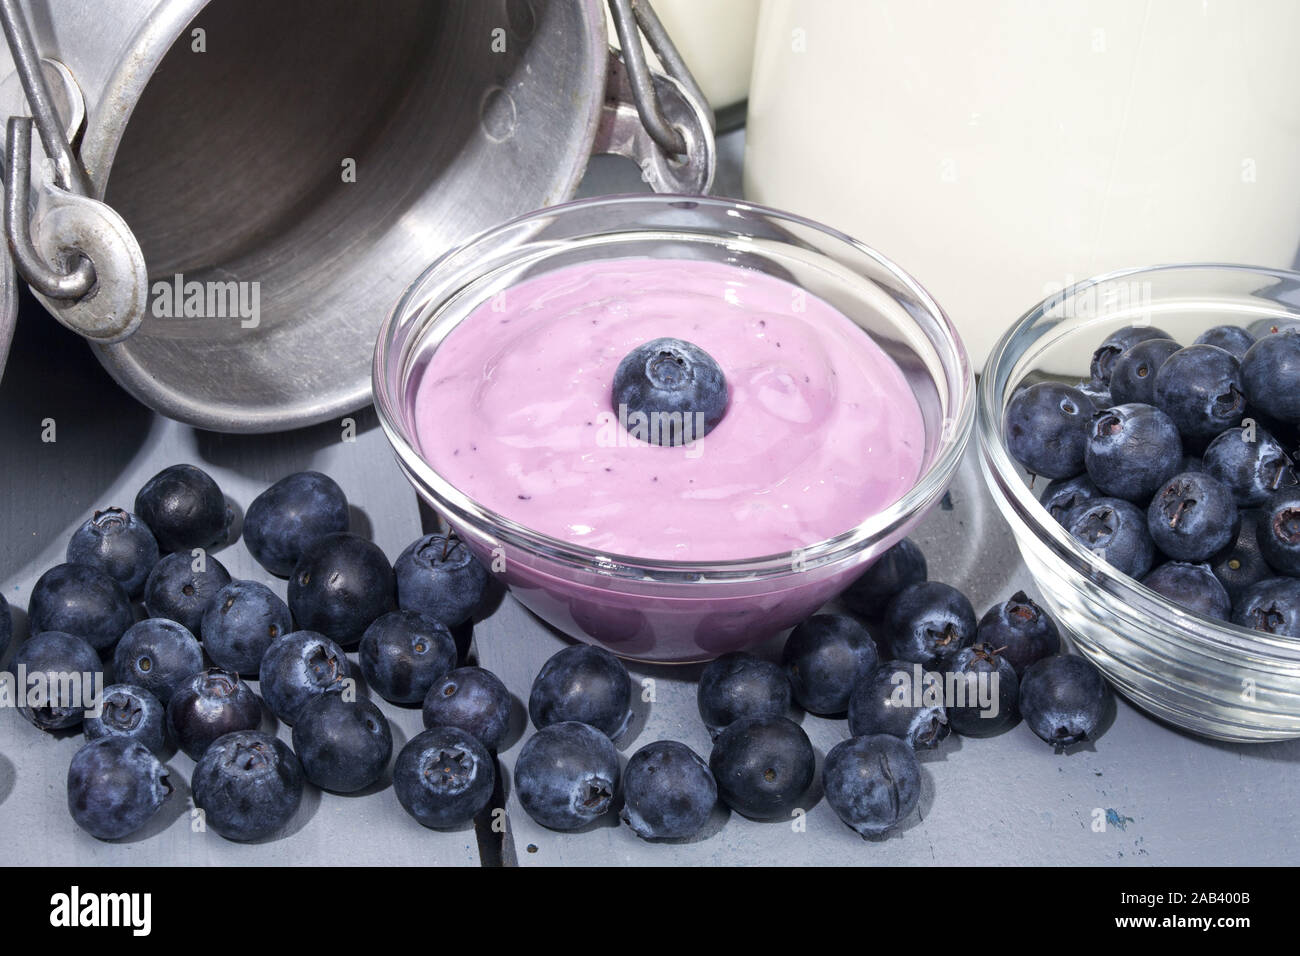 Glasschale mit Joghurt und Heidelbeeren |Glass bowl with yogurt and blueberries| Stock Photo